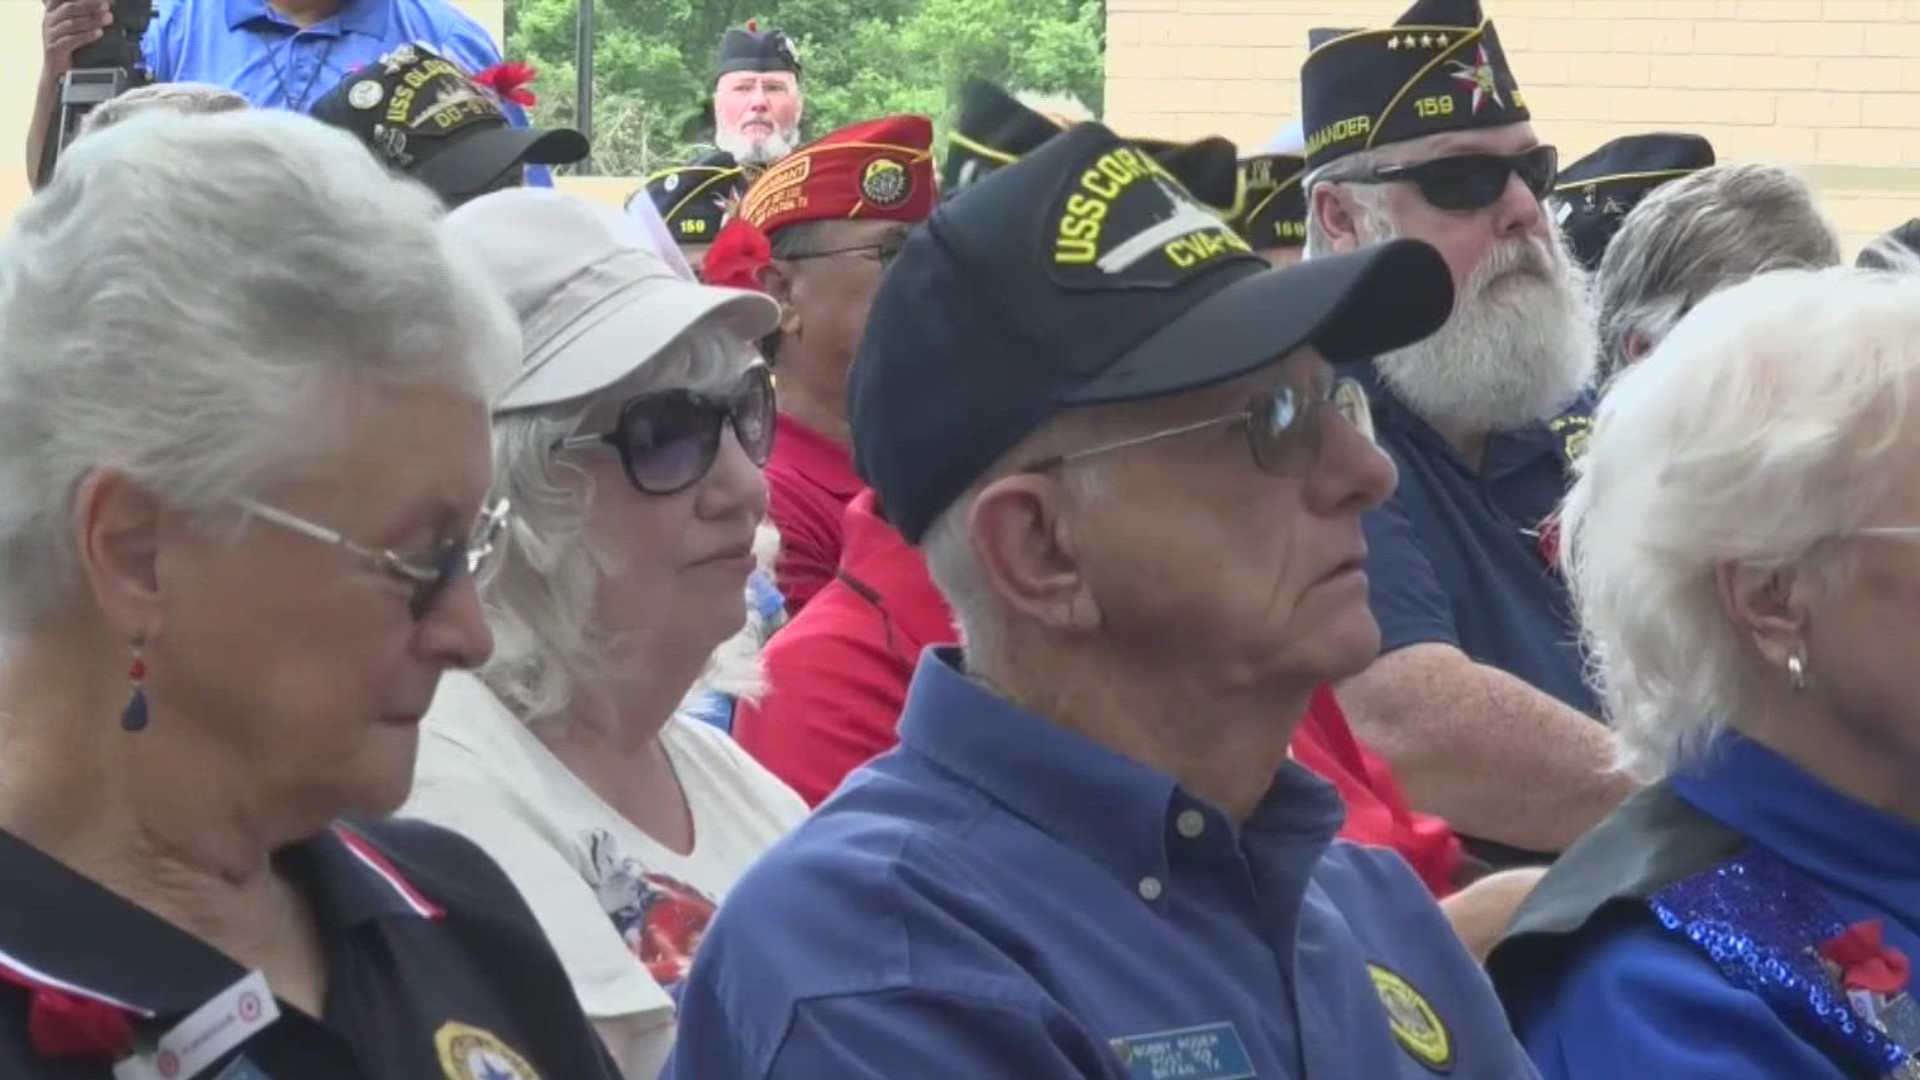 Bryan veterans were honored on memorial day weekend